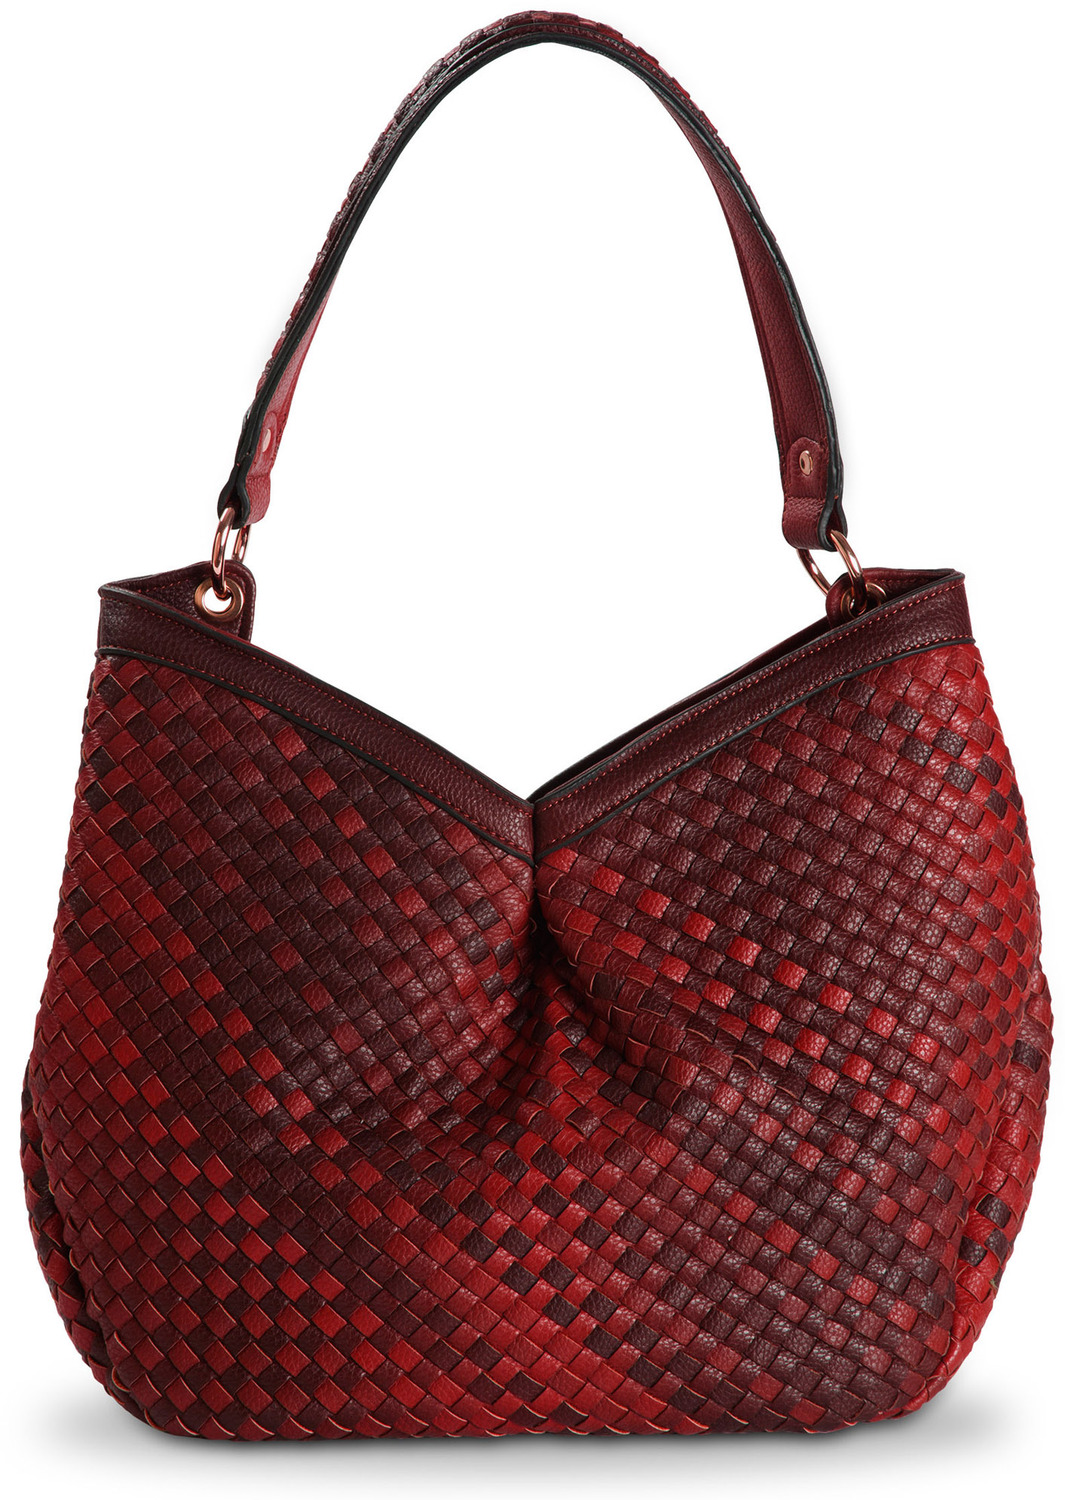 Suzette Marsala by H2Z Ombre Handbags - Suzette Marsala - 13" x 5" x 14" Woven Ombre Purse/Shoulder Bag